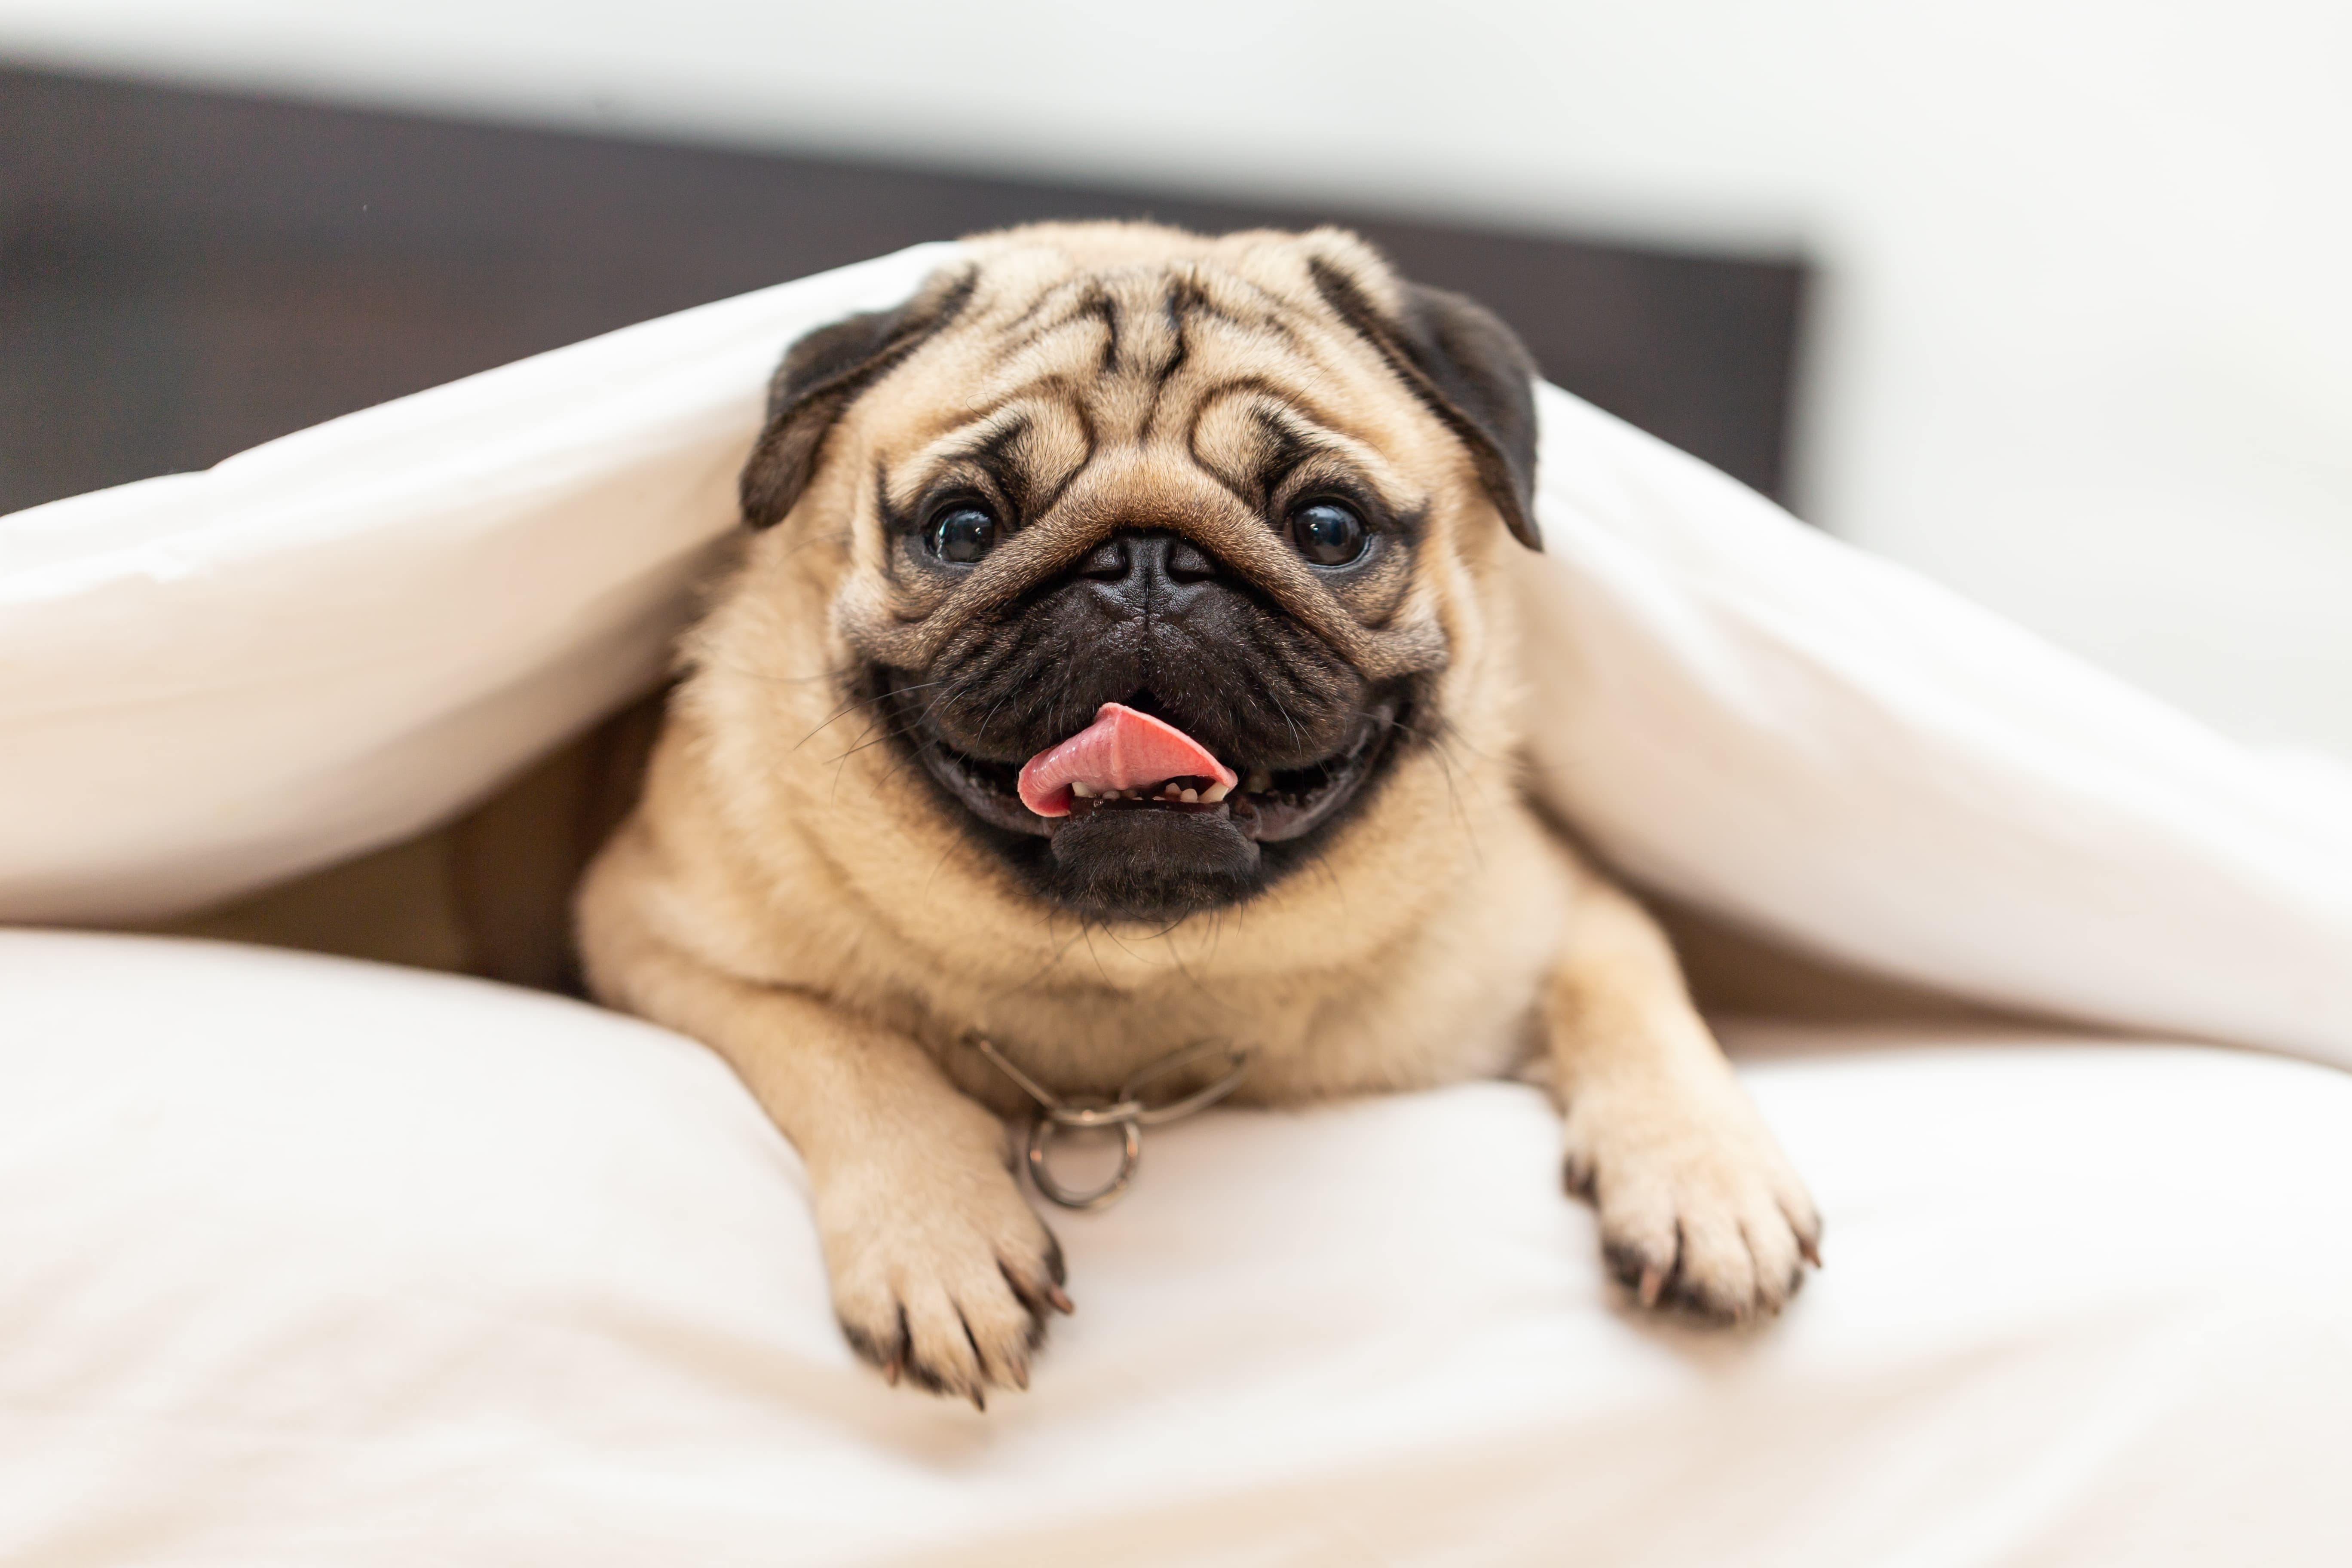 Imagem de um pug caramelo com a língua de fora deitado na cama coberto por uma colcha branca.